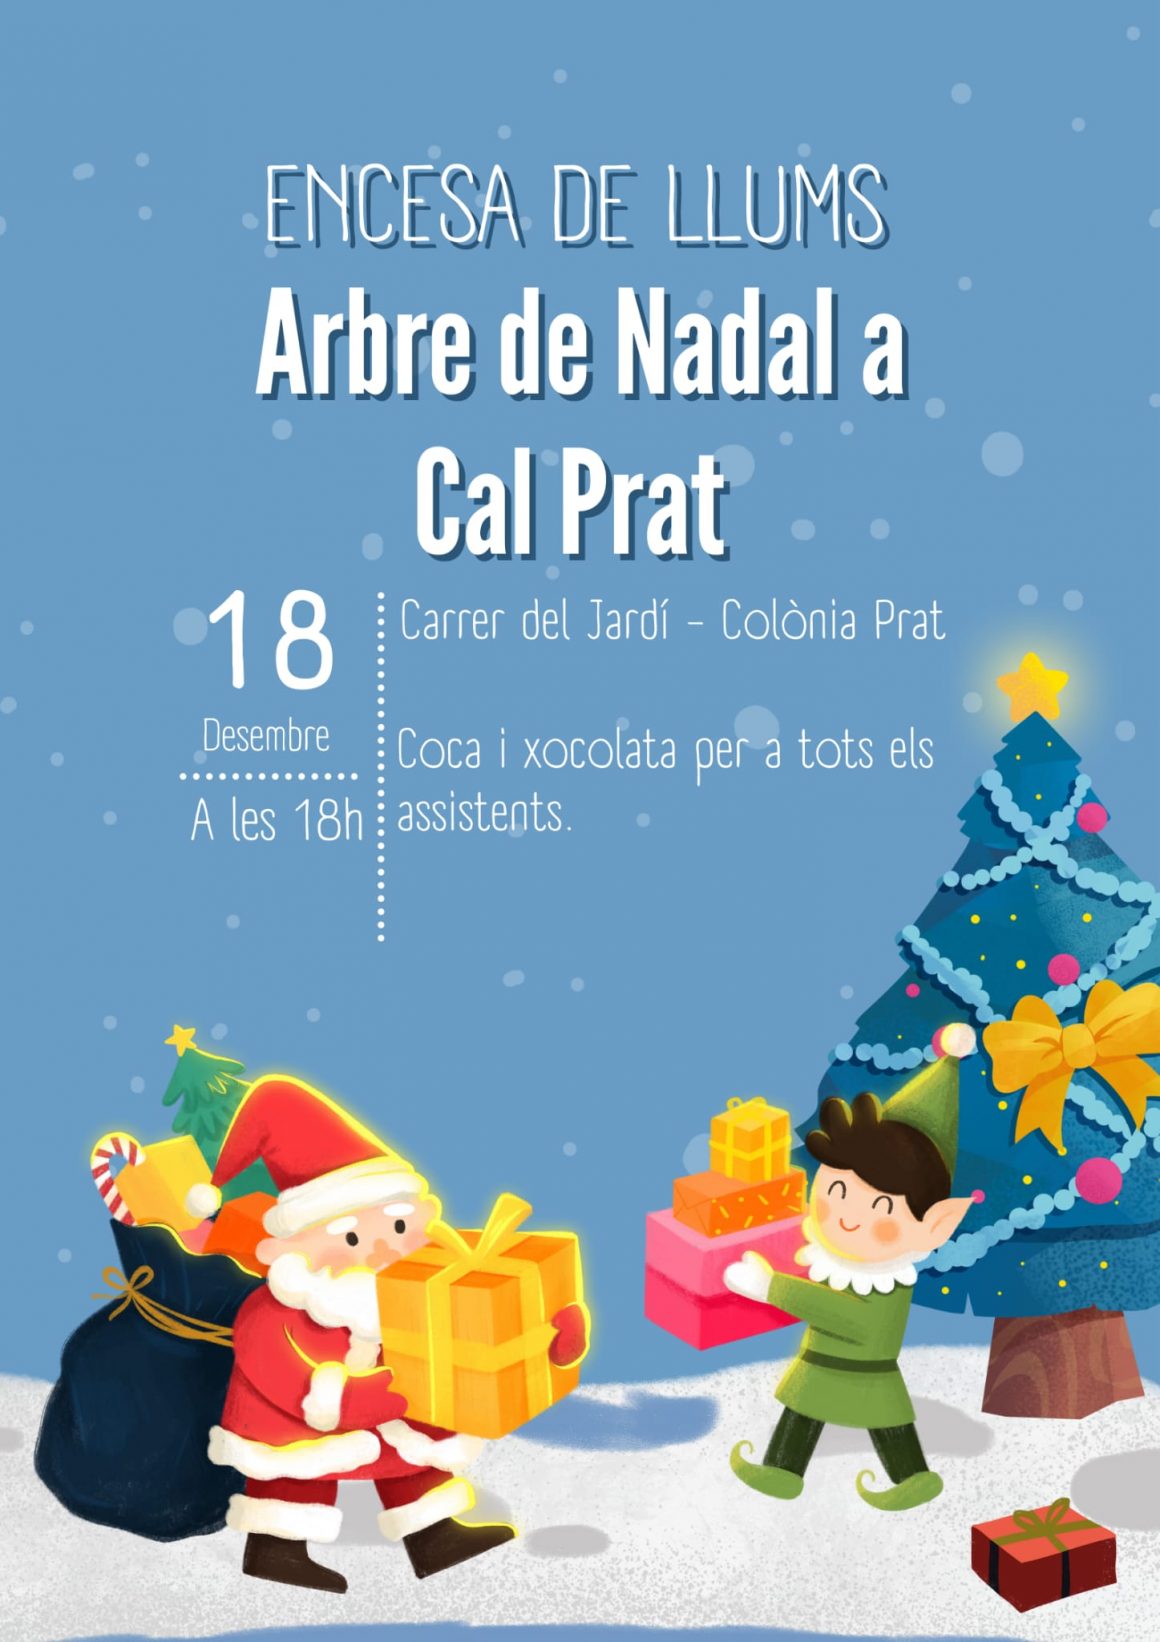 Encesa de Llums Arbre de Nadal a Cal Prat